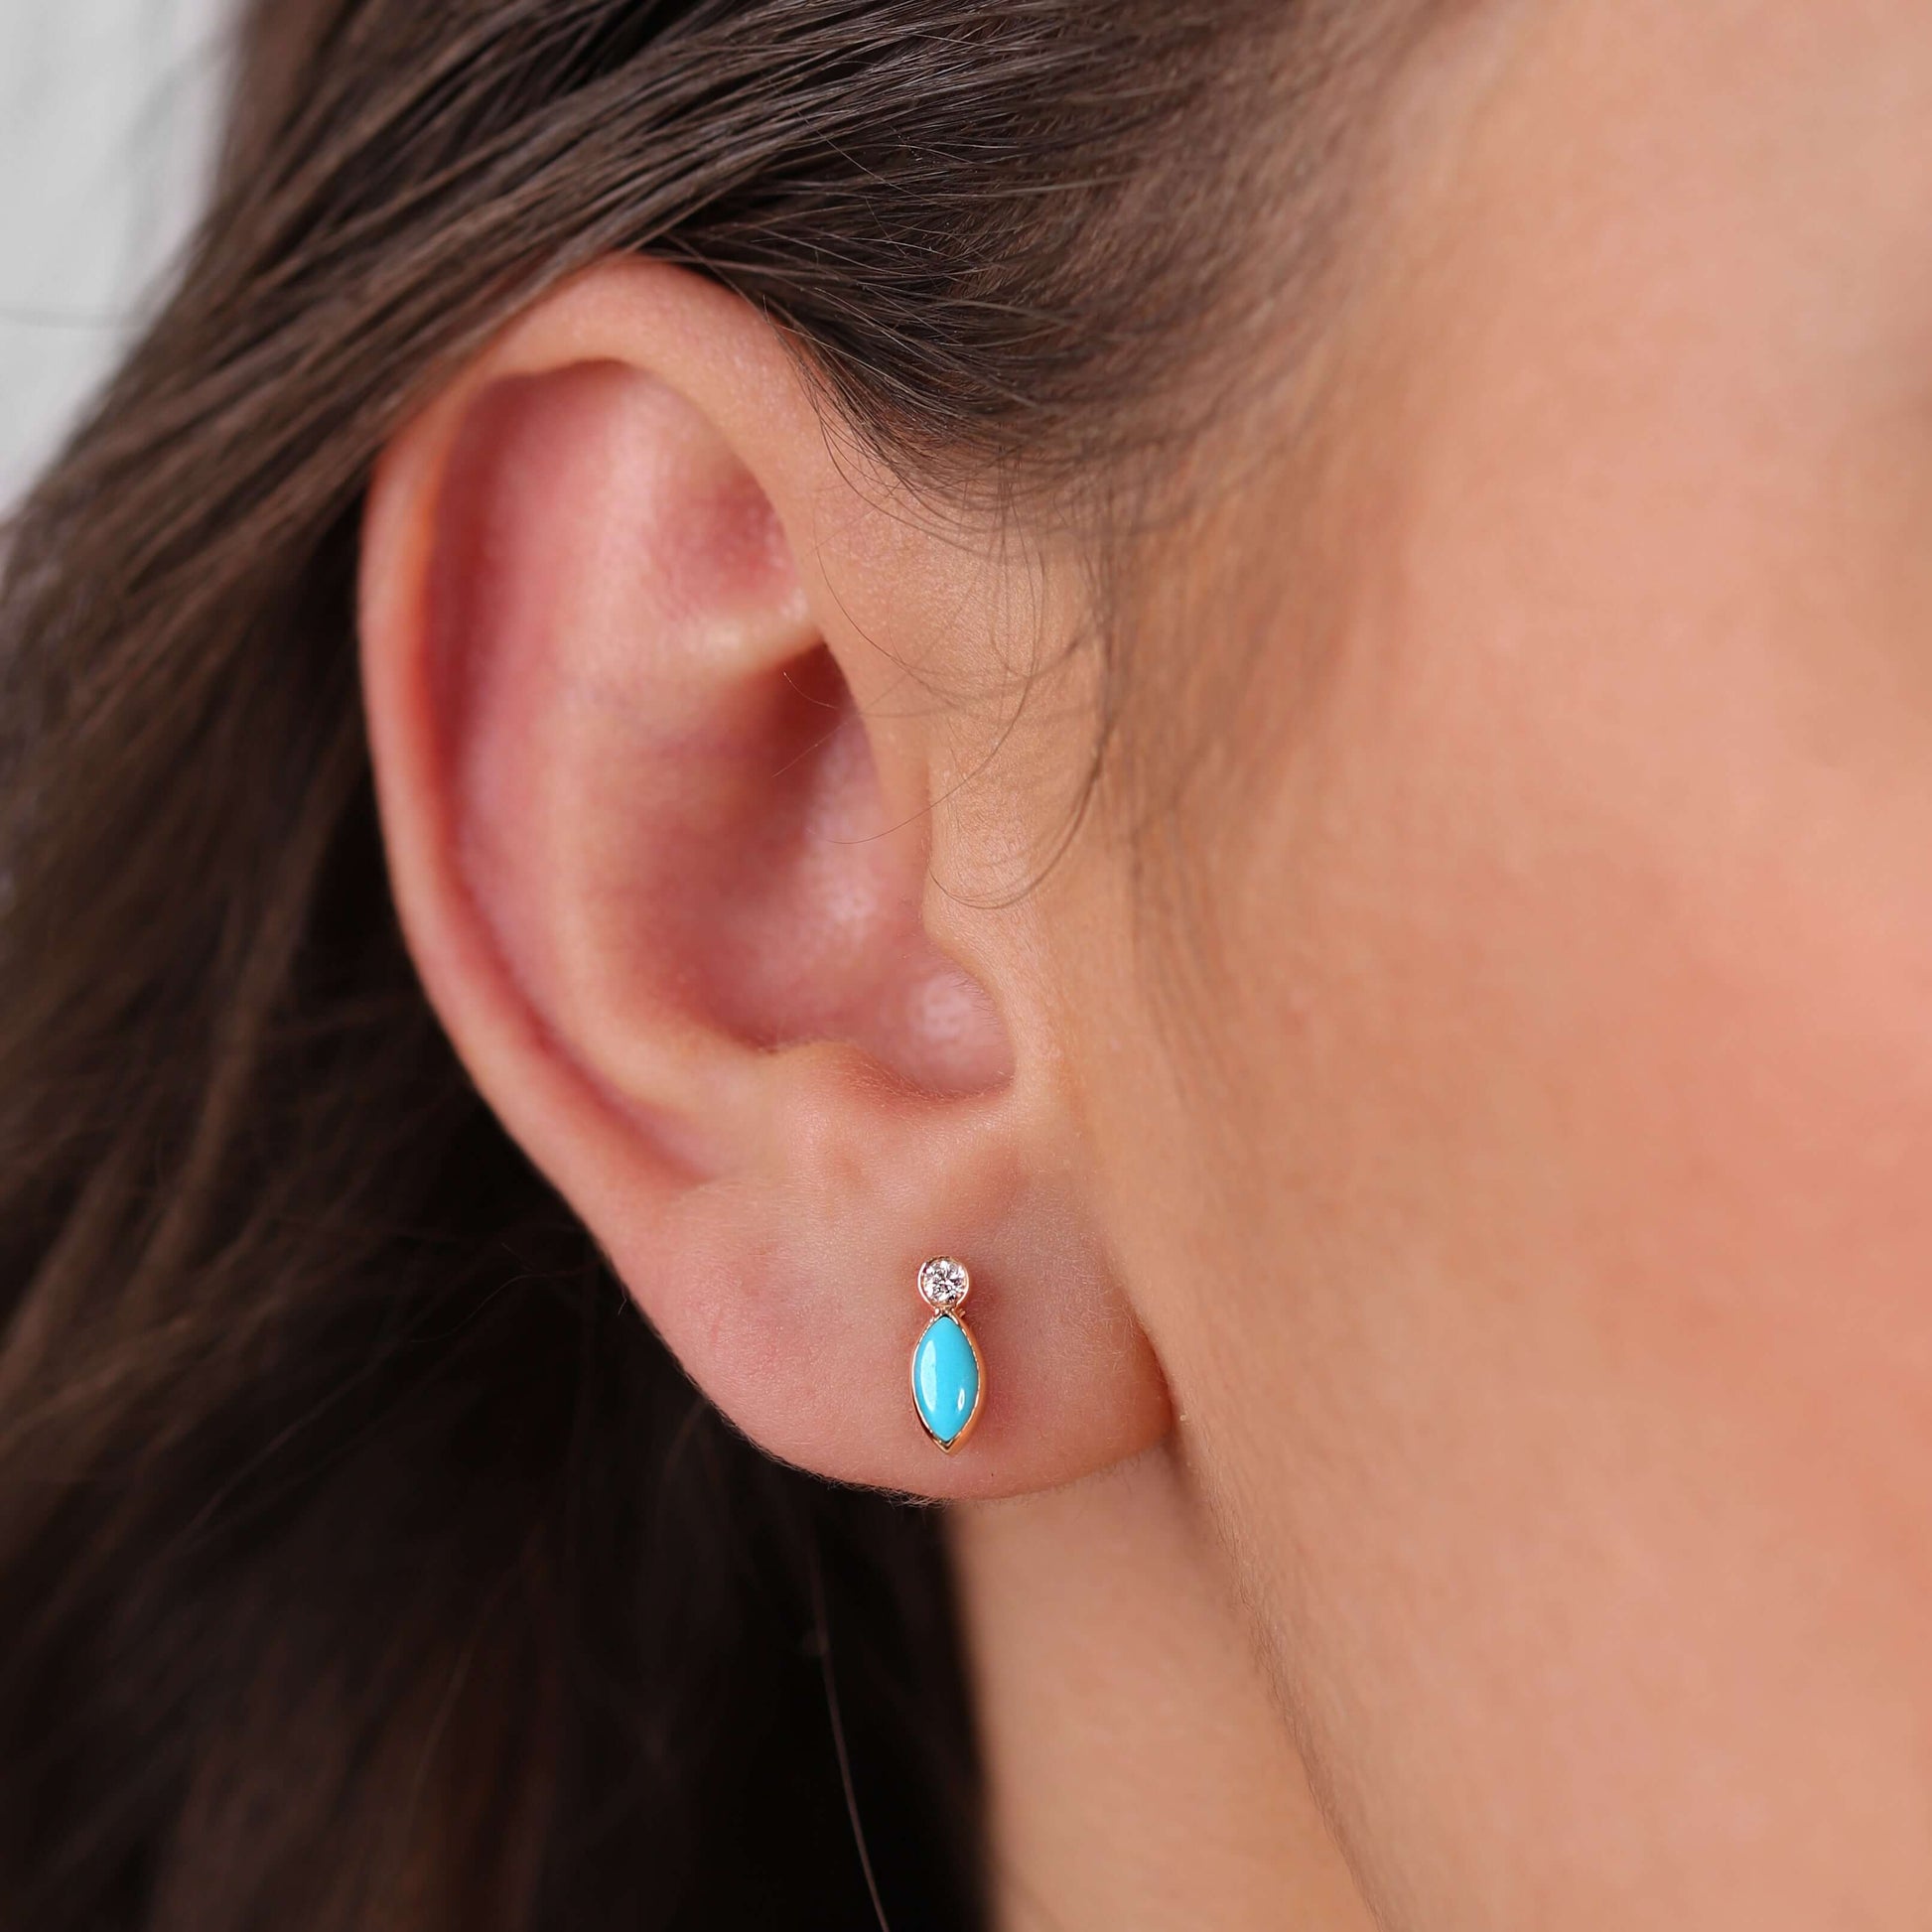 Gilda Jewelry Breeze Studs | Diamond Earrings | 14K Gold - earrings Zengoda Shop online from Artisan Brands